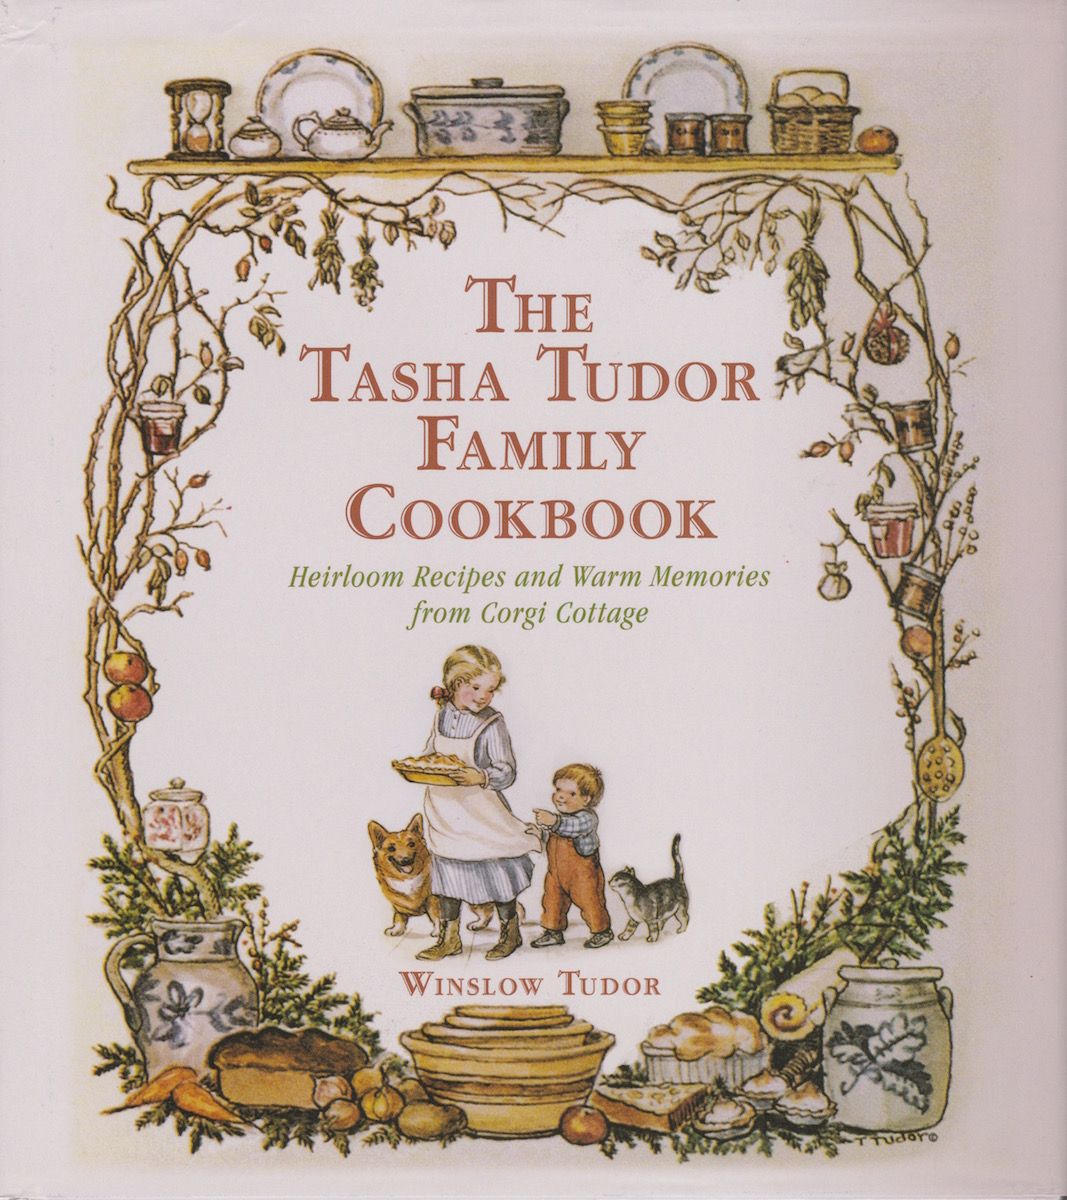 Winslow-tudor-cookbook-cover